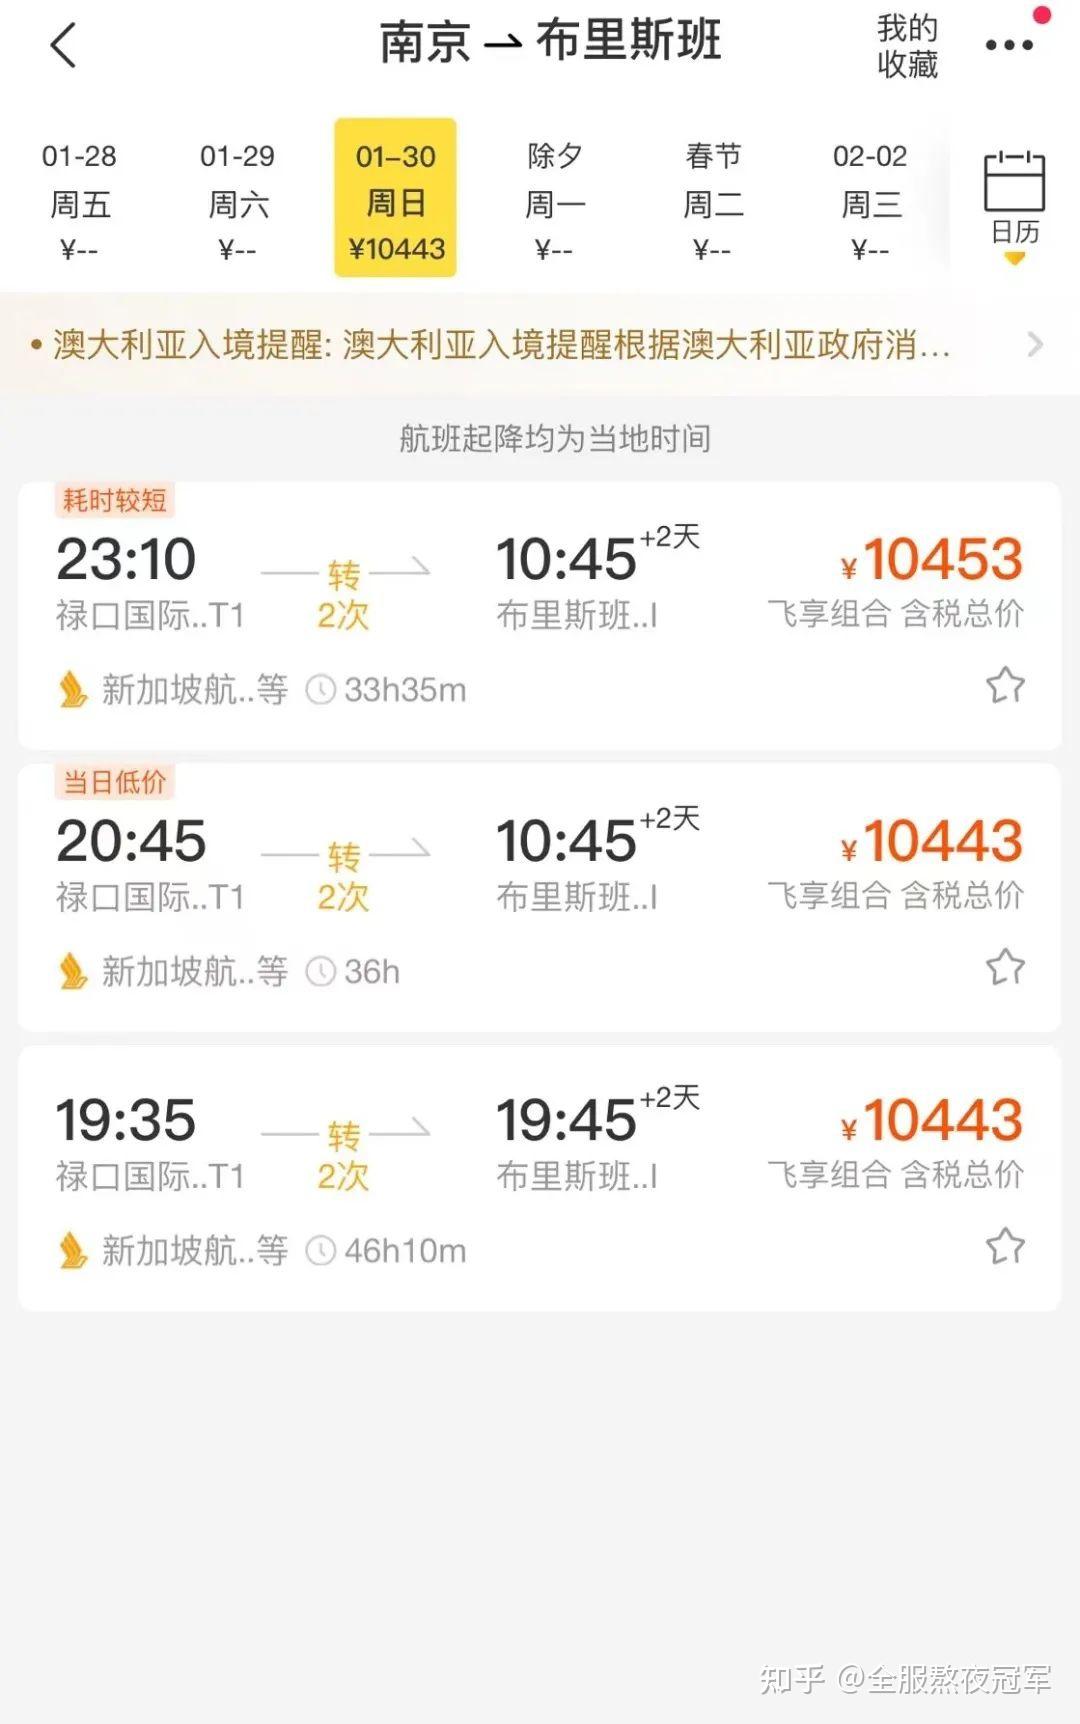 北京到澳大利亚机票价格¥1112起|特价机票查询及比价 - KAYAK旅游比价